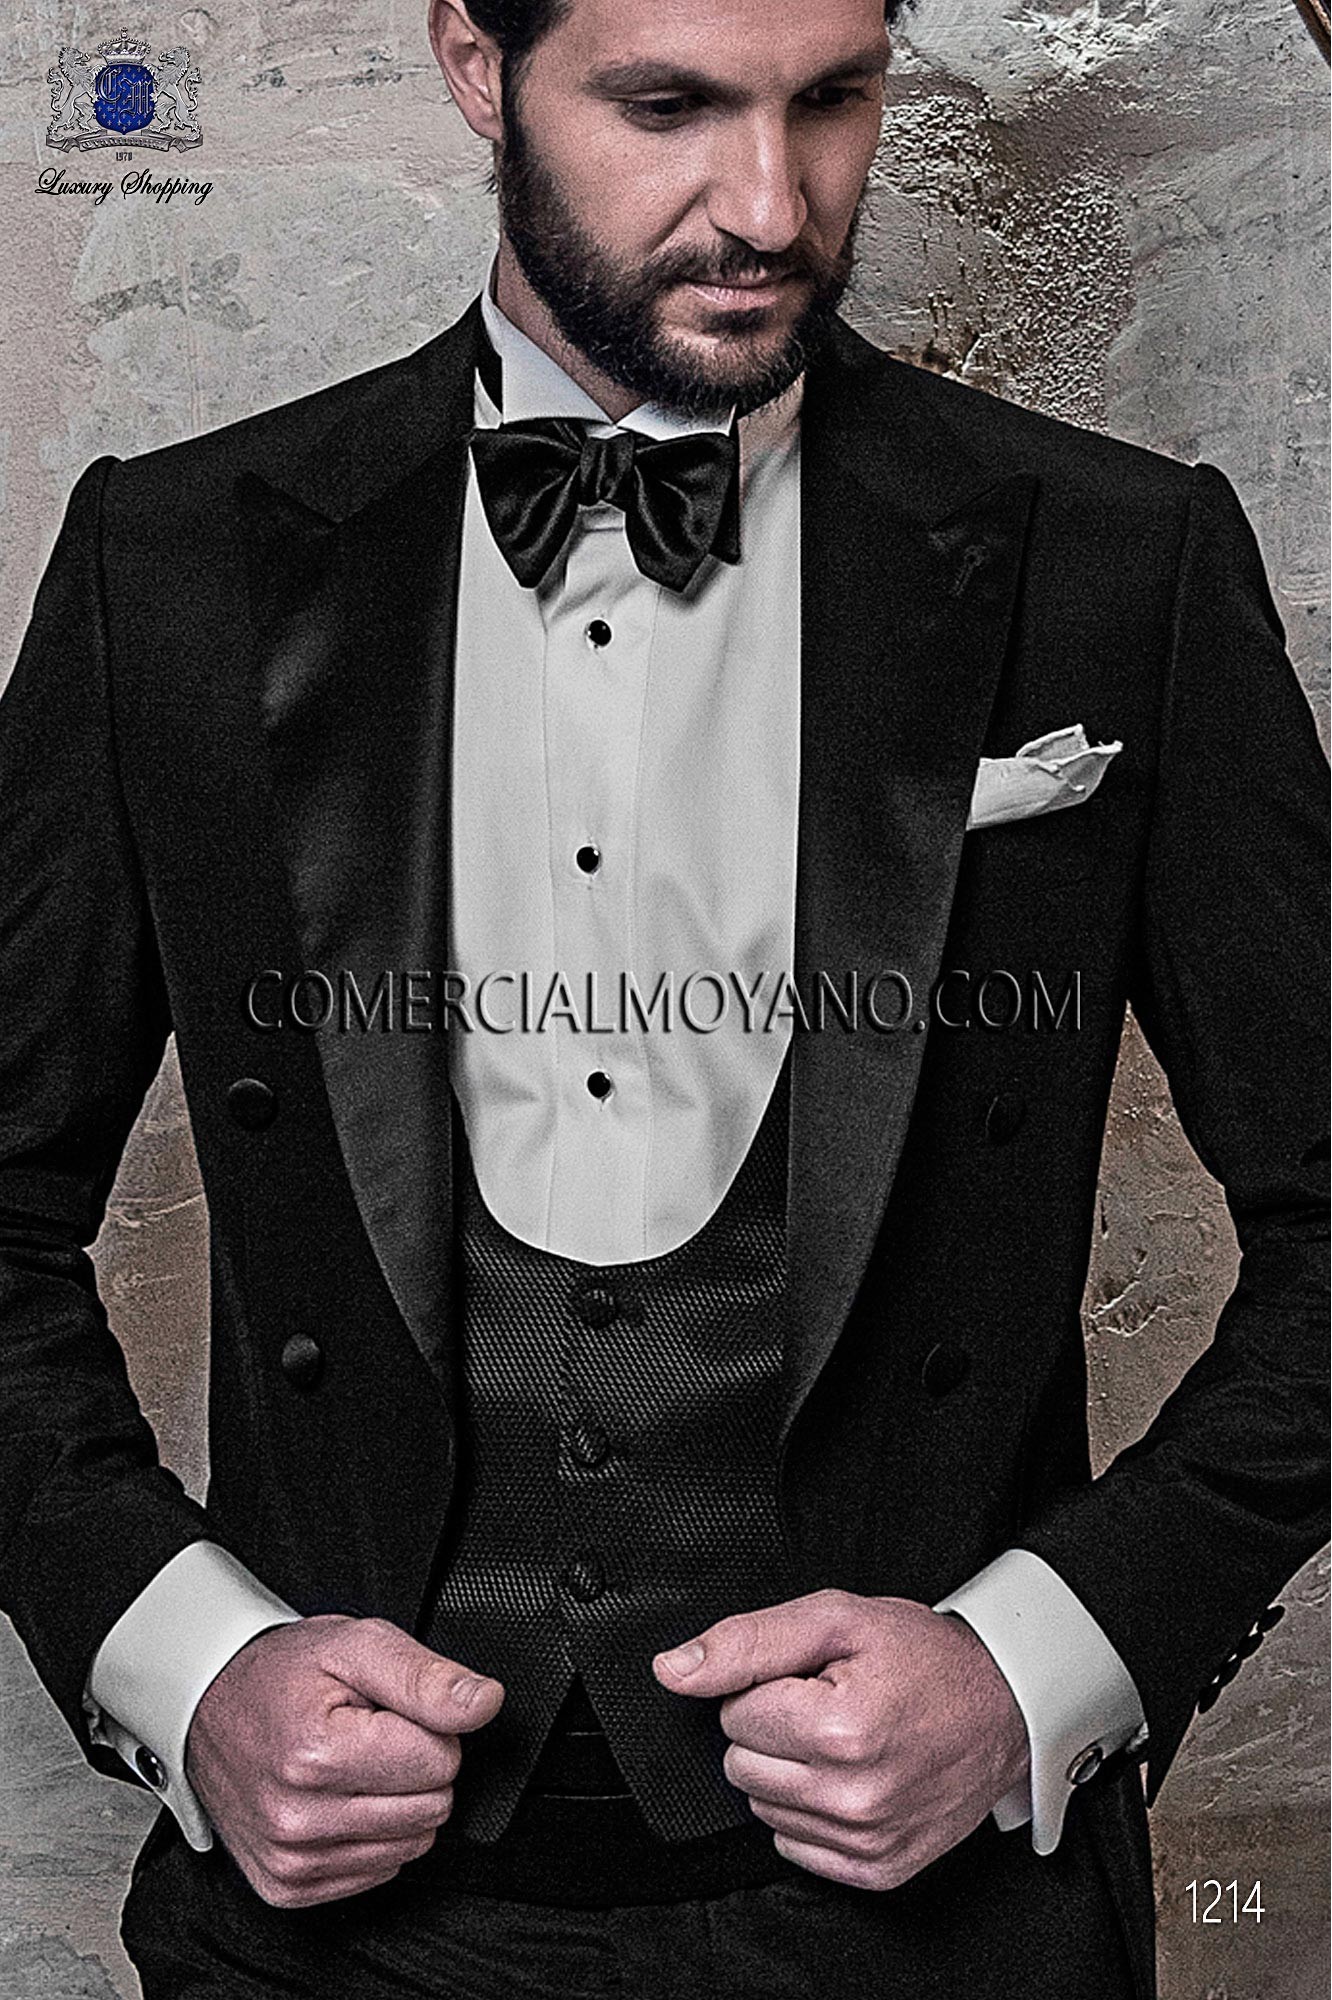 Traje BlackTie de novio negro modelo: 1214 Mario Moyano colección Black Tie